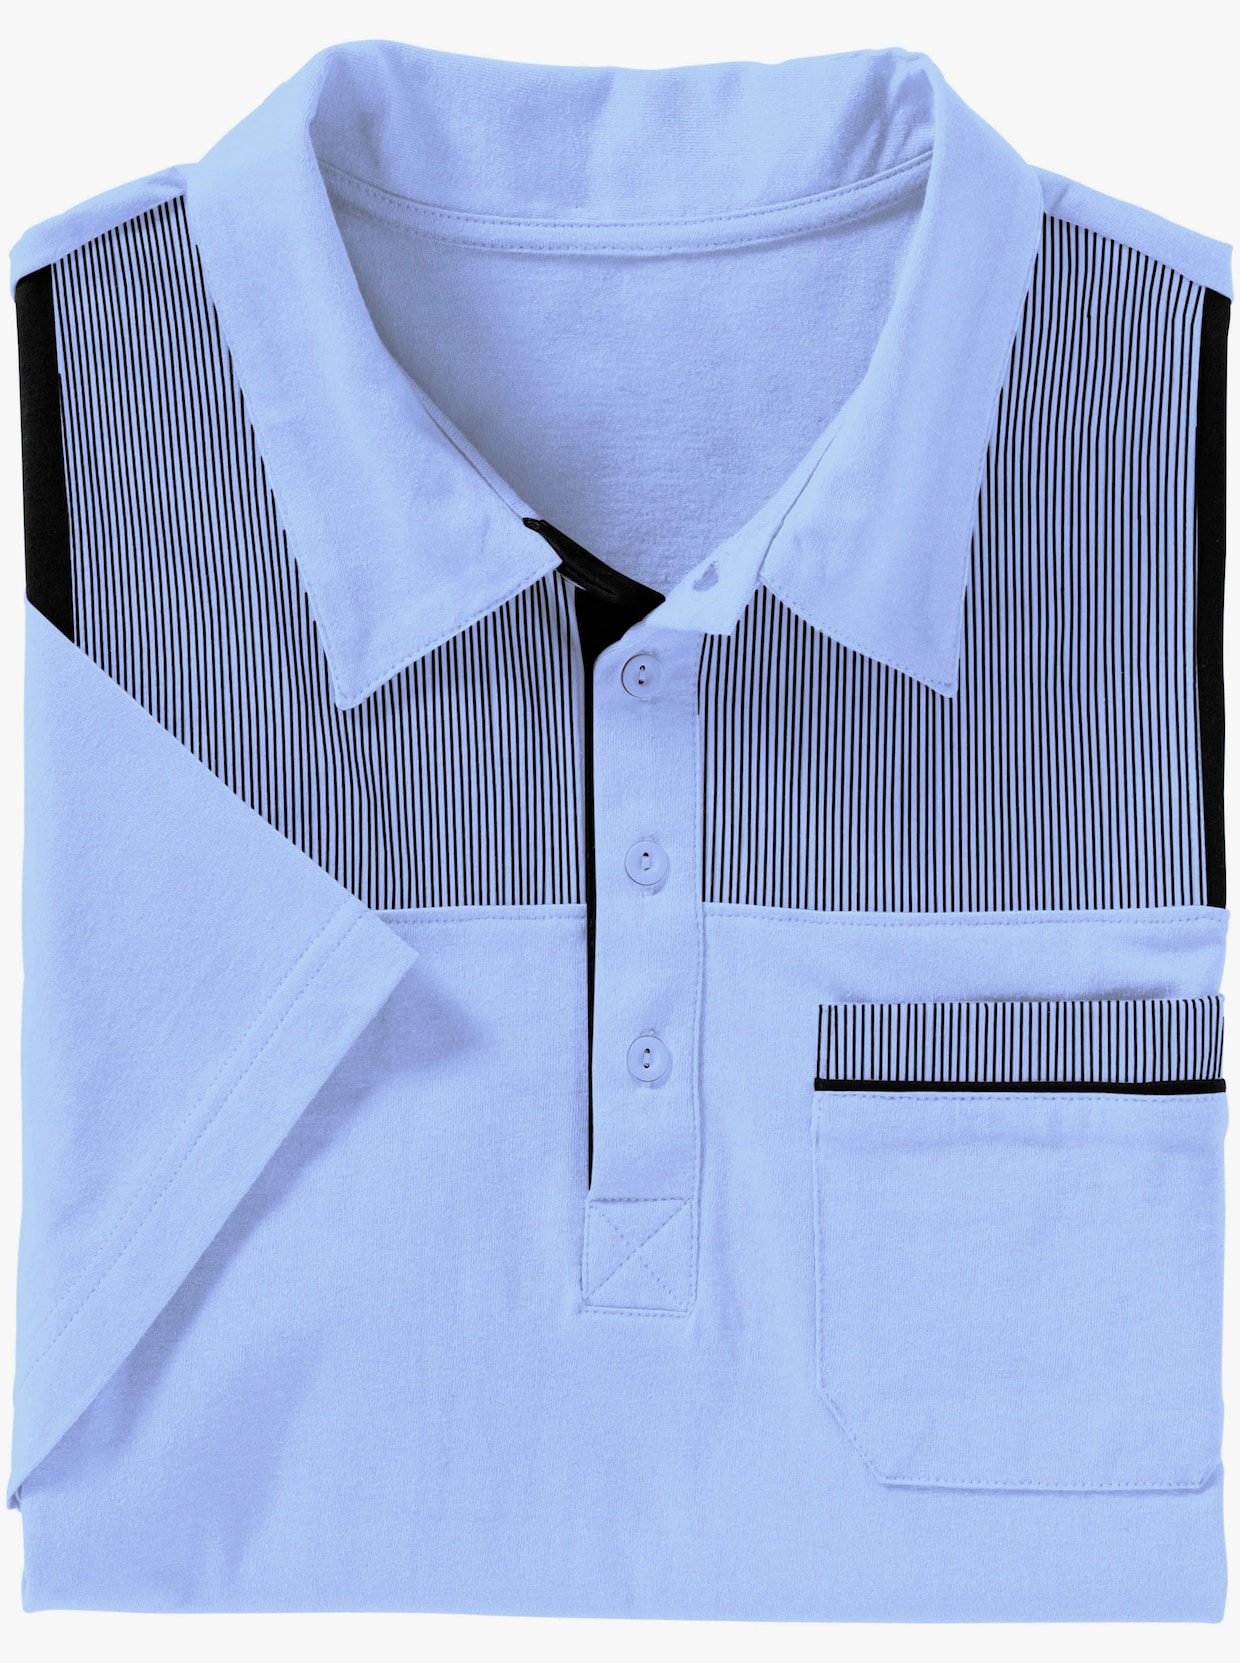 Poloshirt - hellblau-marine